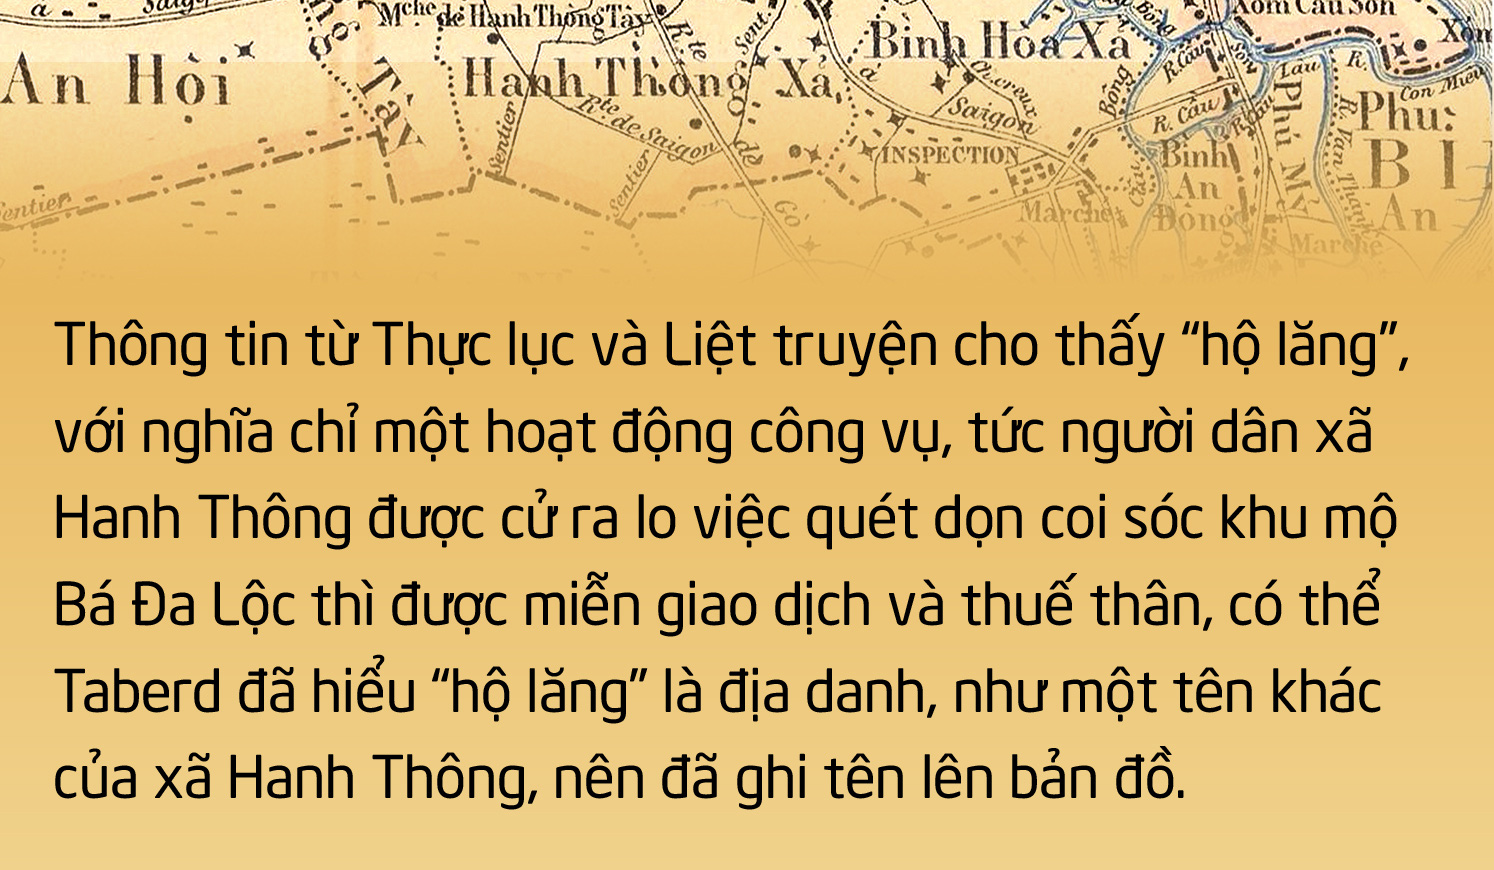 Sài Gòn: Bí ẩn địa danh trên bản đồ xưa - Ảnh 5.